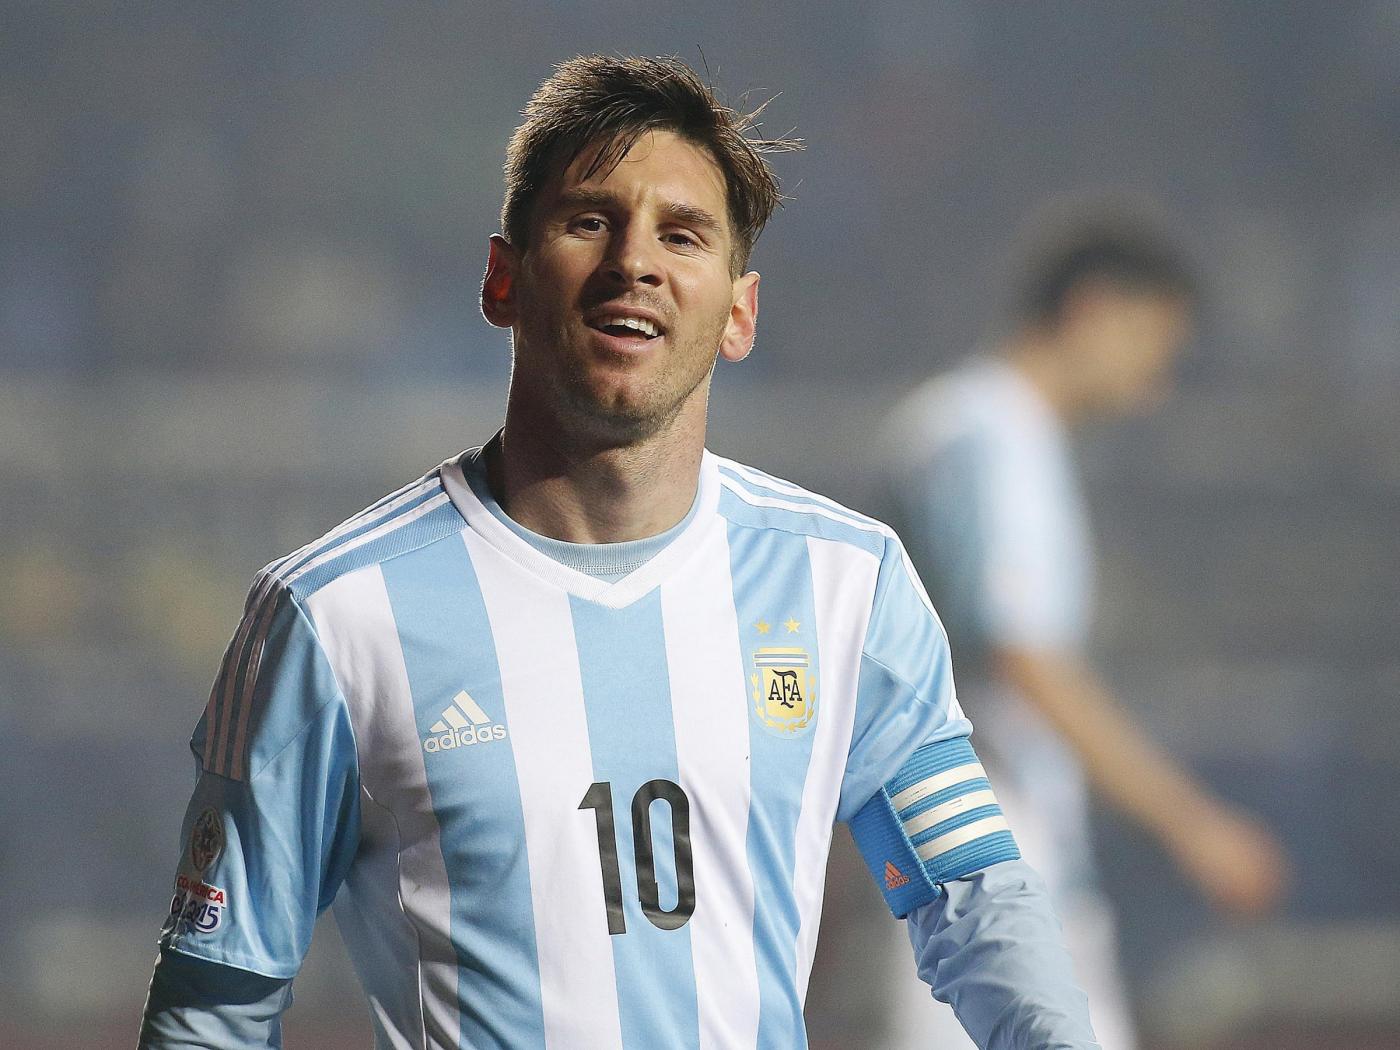 Pronostici Qualificazioni Mondiali martedì 10 ottobre ed Europei Under 21 Messi per salvare Argentina tutte le scommesse scelte dal Blab delle 39 partite in programma oggi